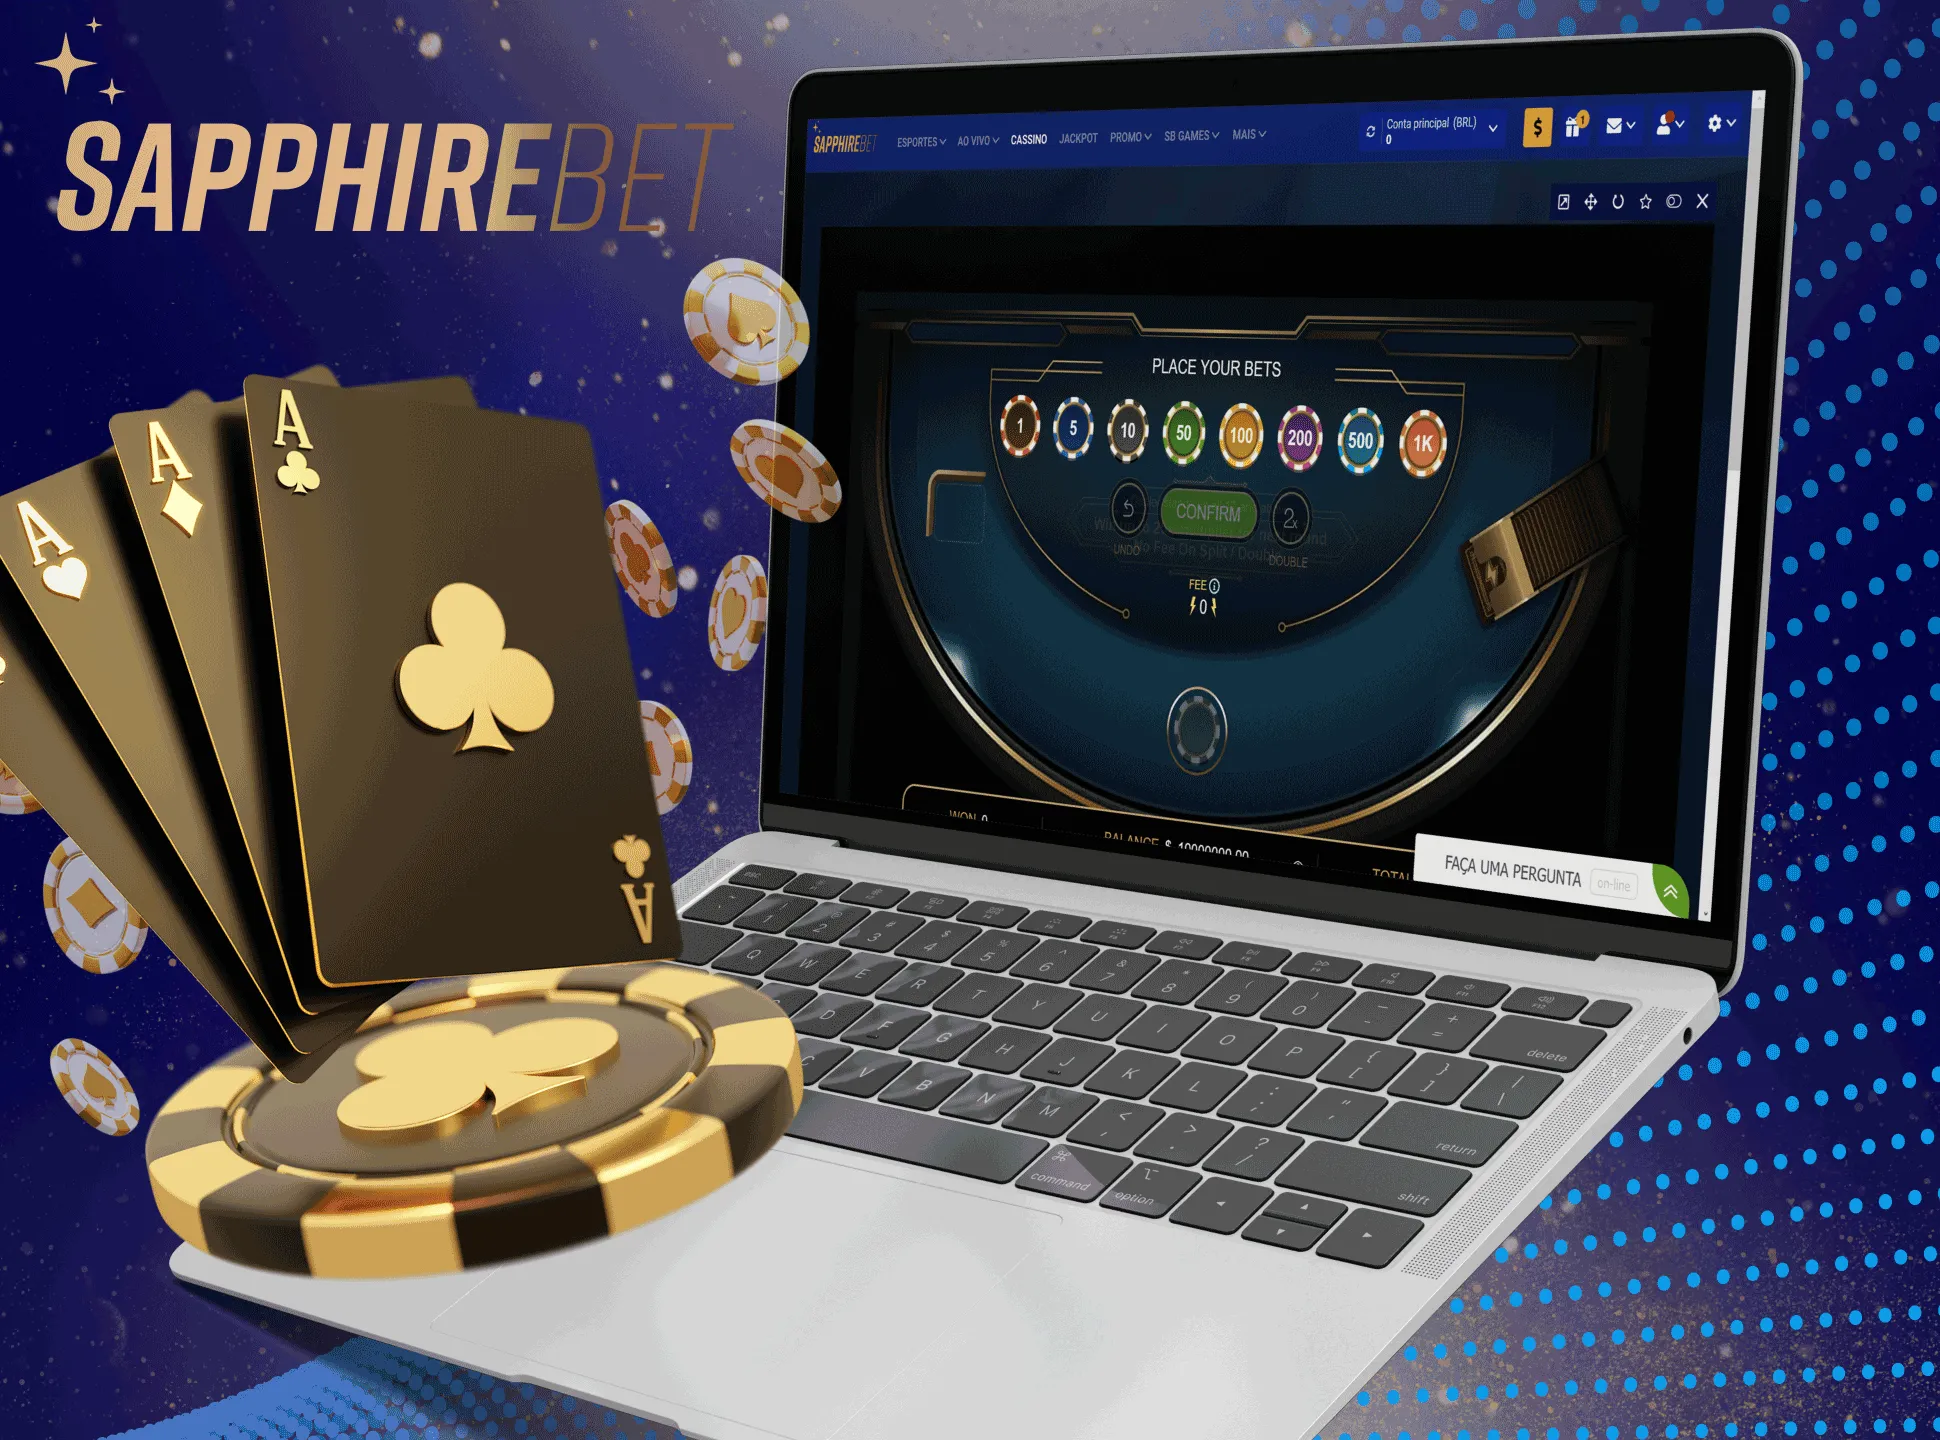 Por favor, crie uma conta para começar a ganhar dinheiro real jogando no Sapphirebet Casino.